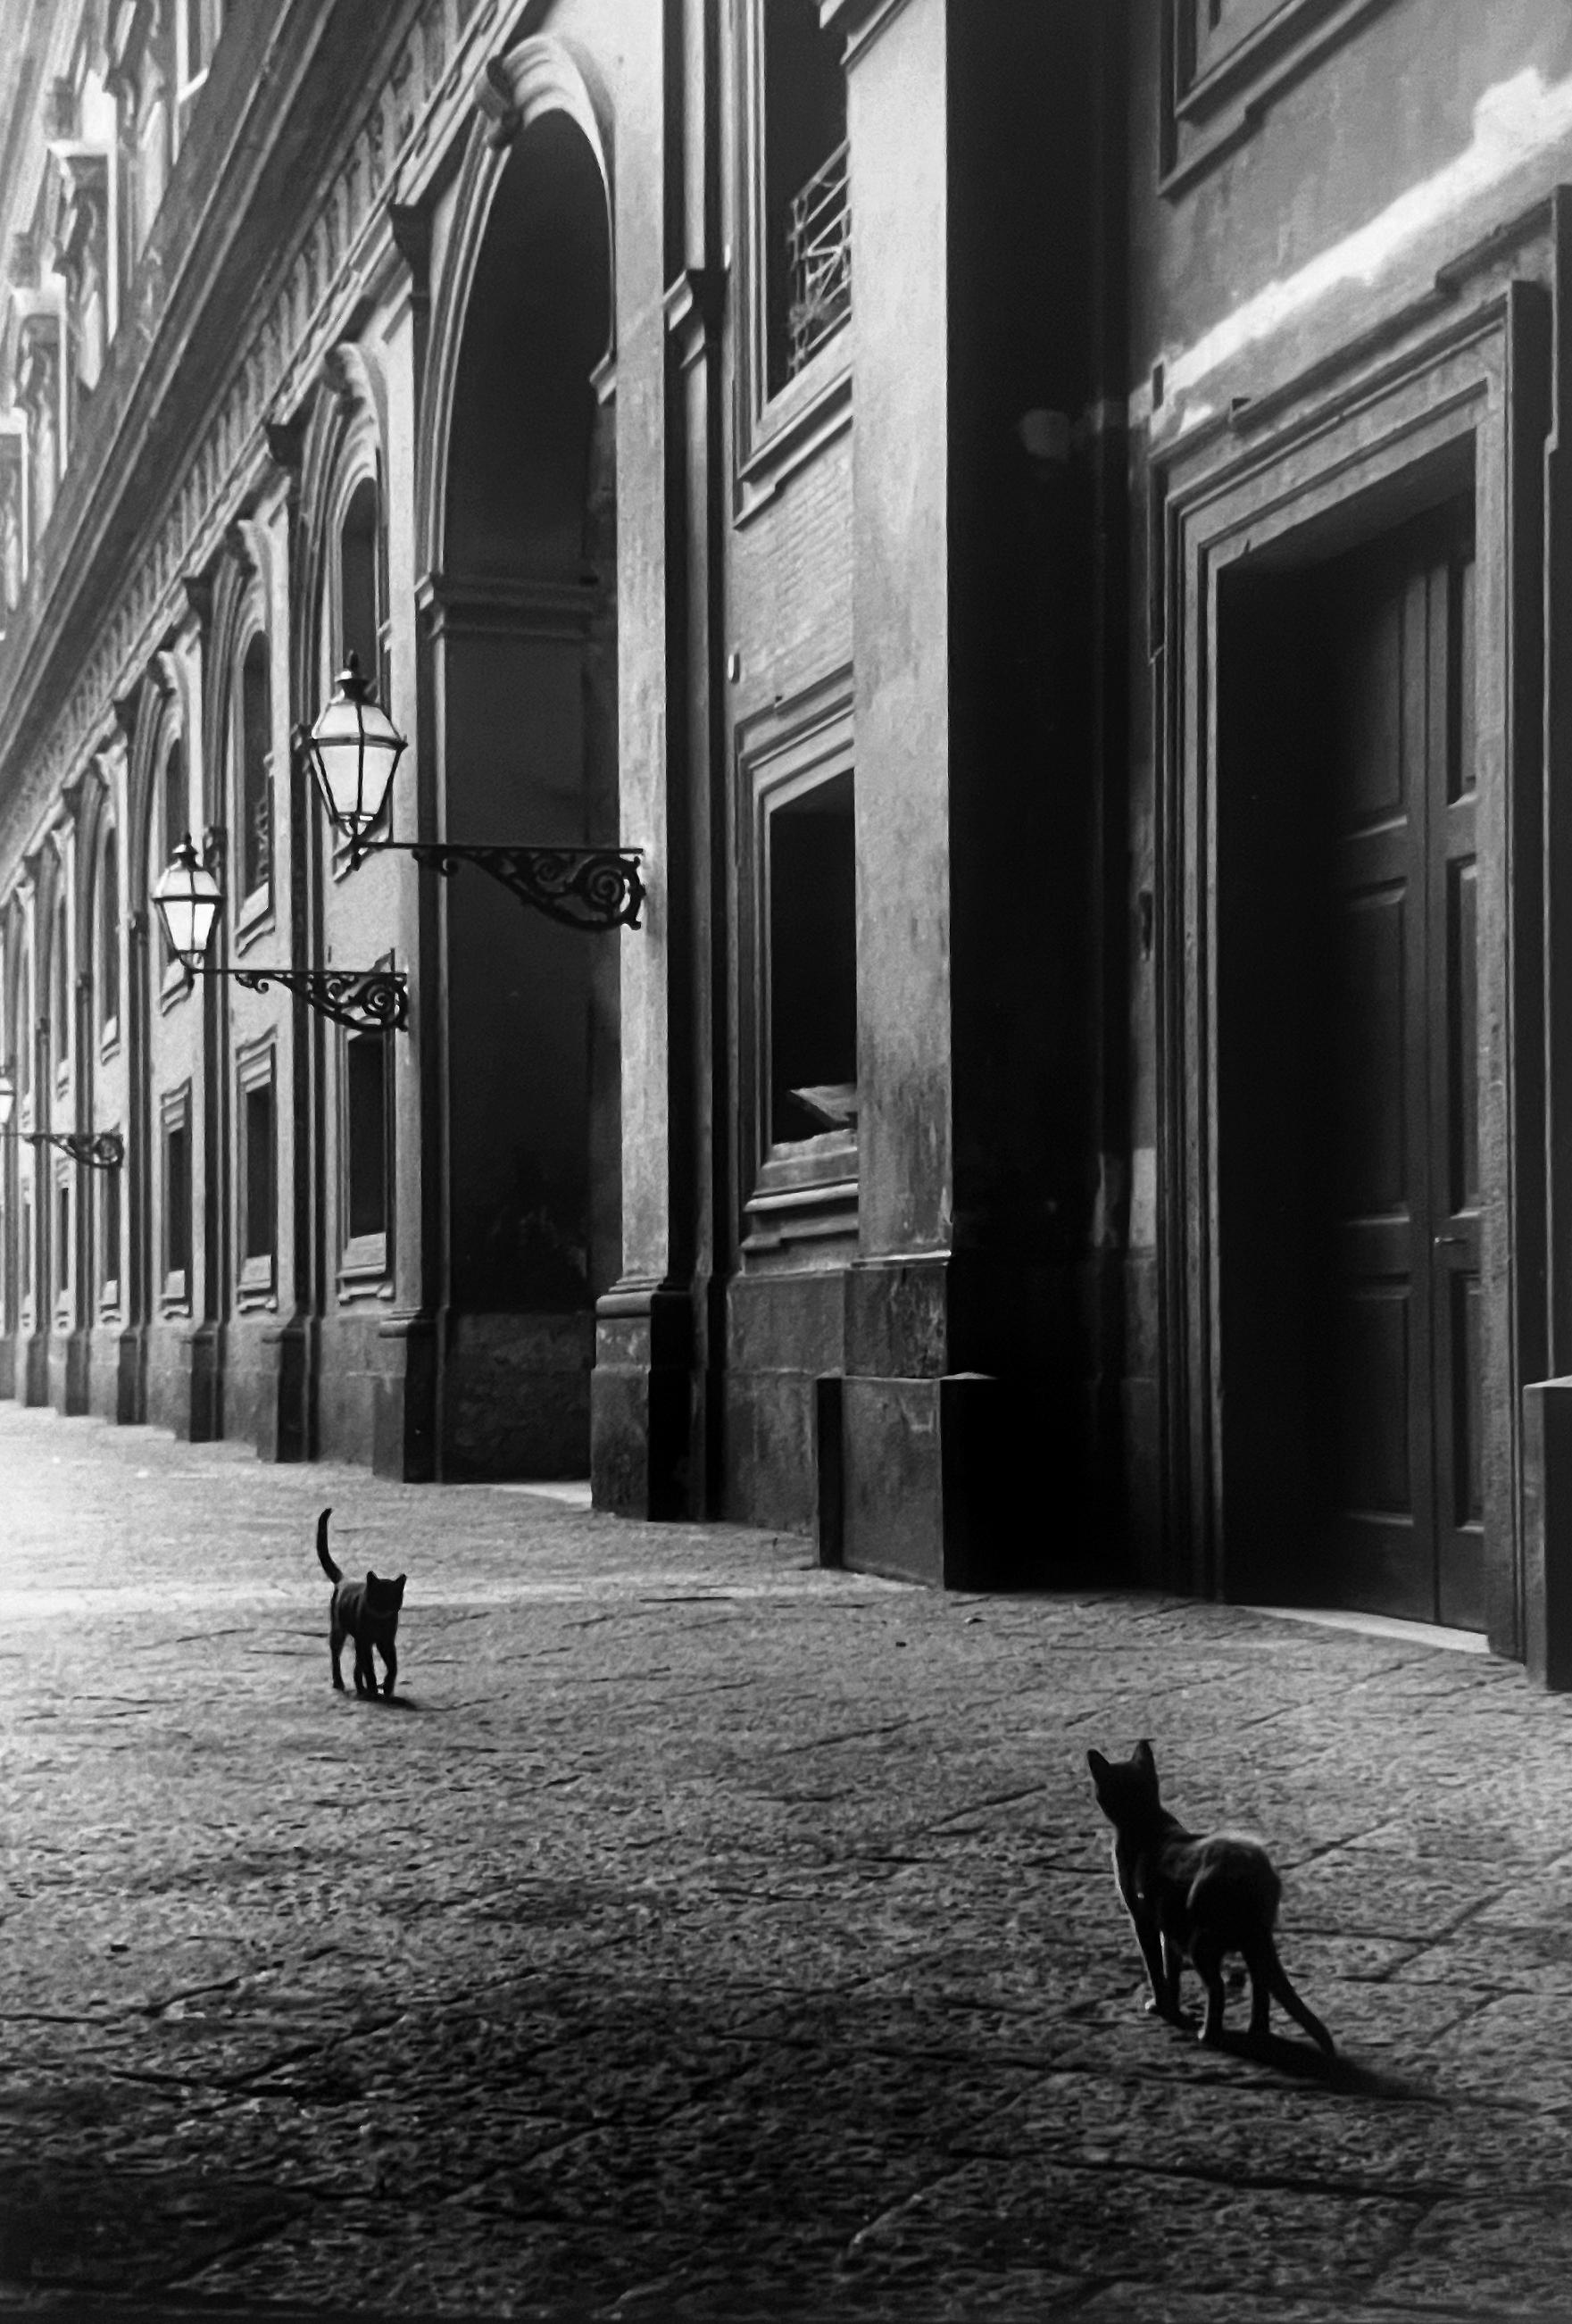 Le photographe américain Leonard Freed a beaucoup voyagé et apprécié l'Italie, un pays où il est souvent retourné et qu'il a photographié tout au long de sa longue carrière de photographe. Cats, Naples, Italie, 1956 par Freed est un tirage